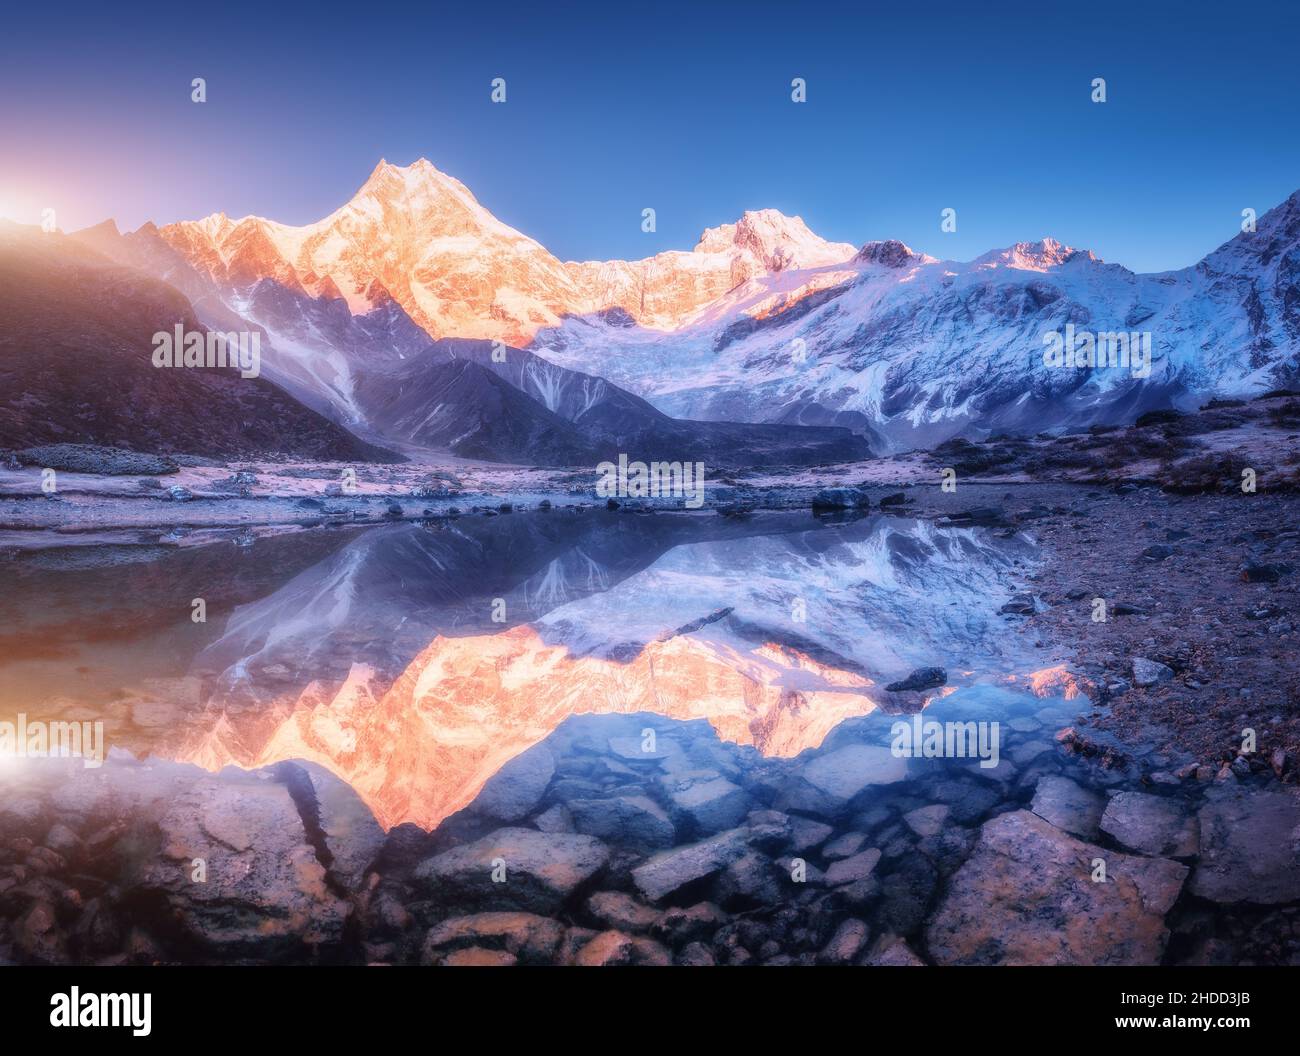 Montagne enneigée avec des sommets éclairés et un lac magnifique Banque D'Images